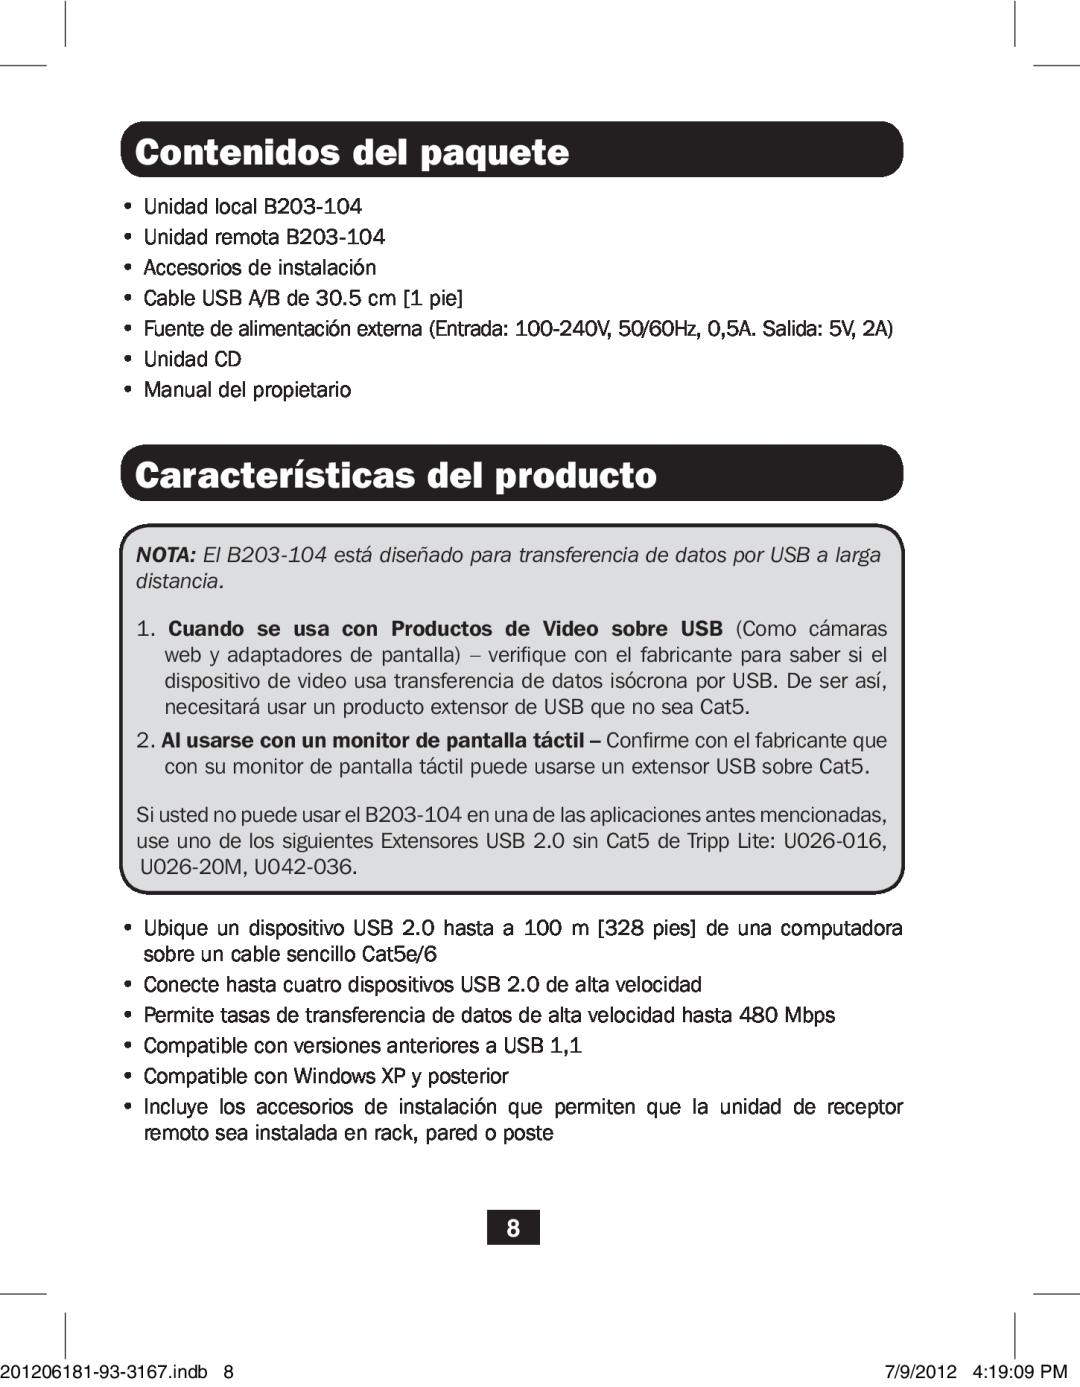 Tripp Lite B203-104 owner manual Contenidos del paquete, Características del producto 